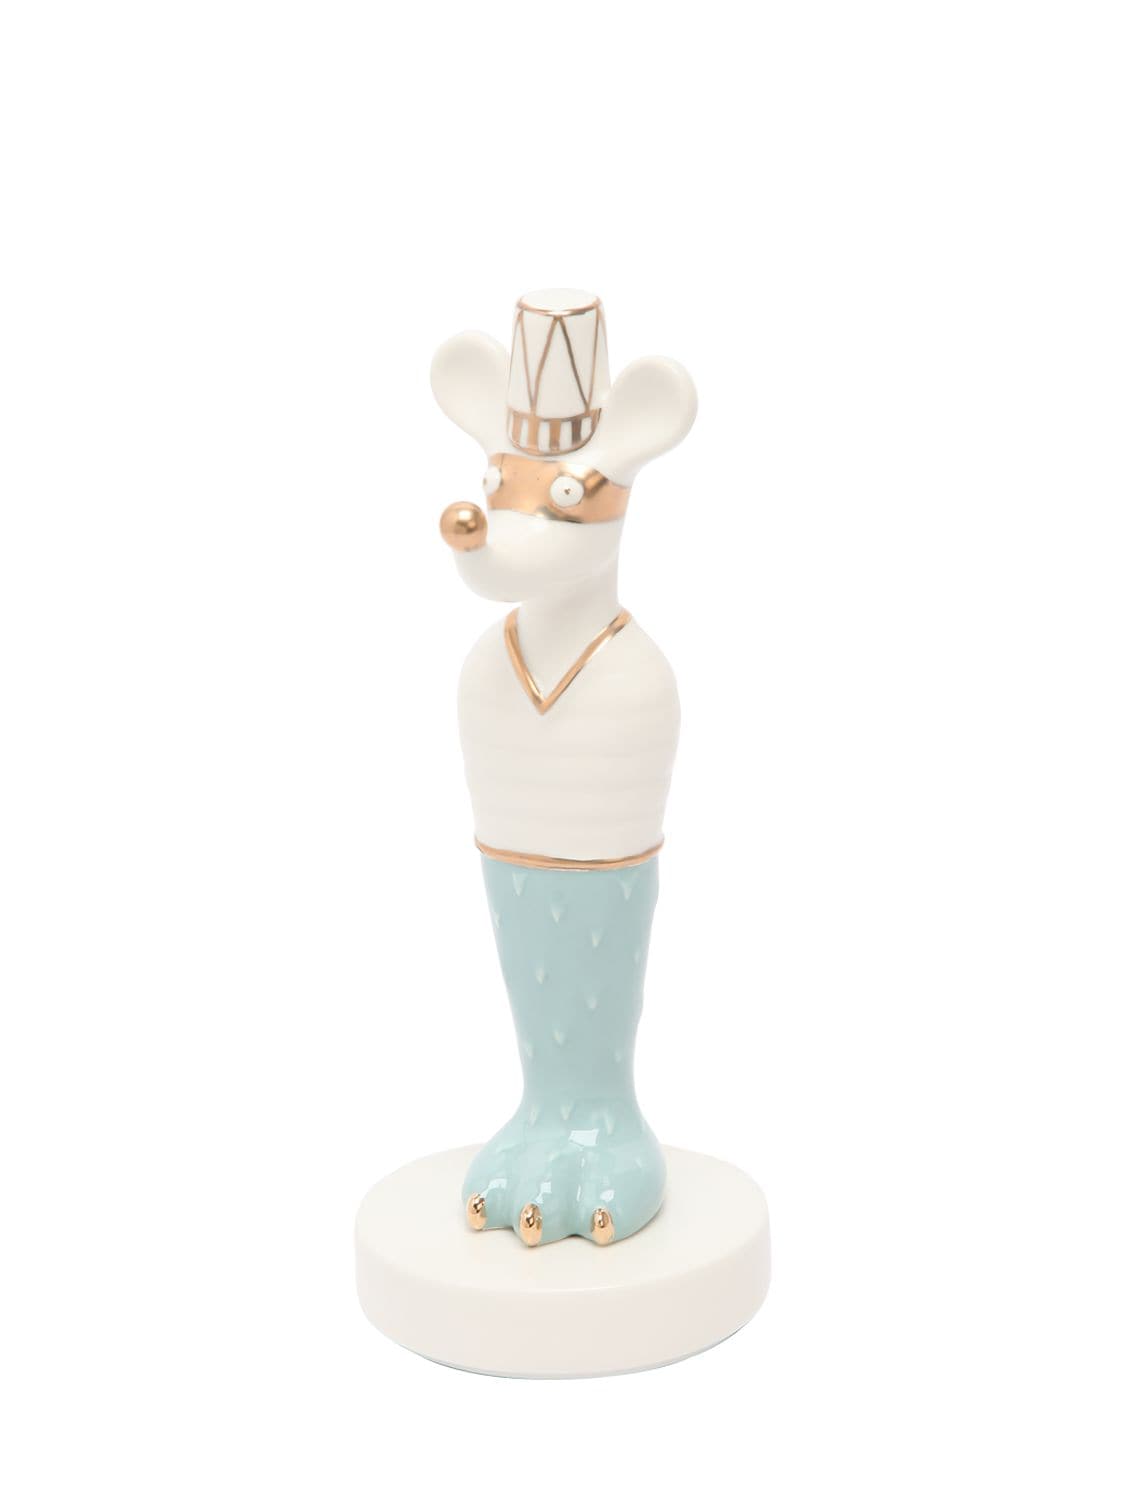 Bosa Tolo Ceramic Figurine In White,blue